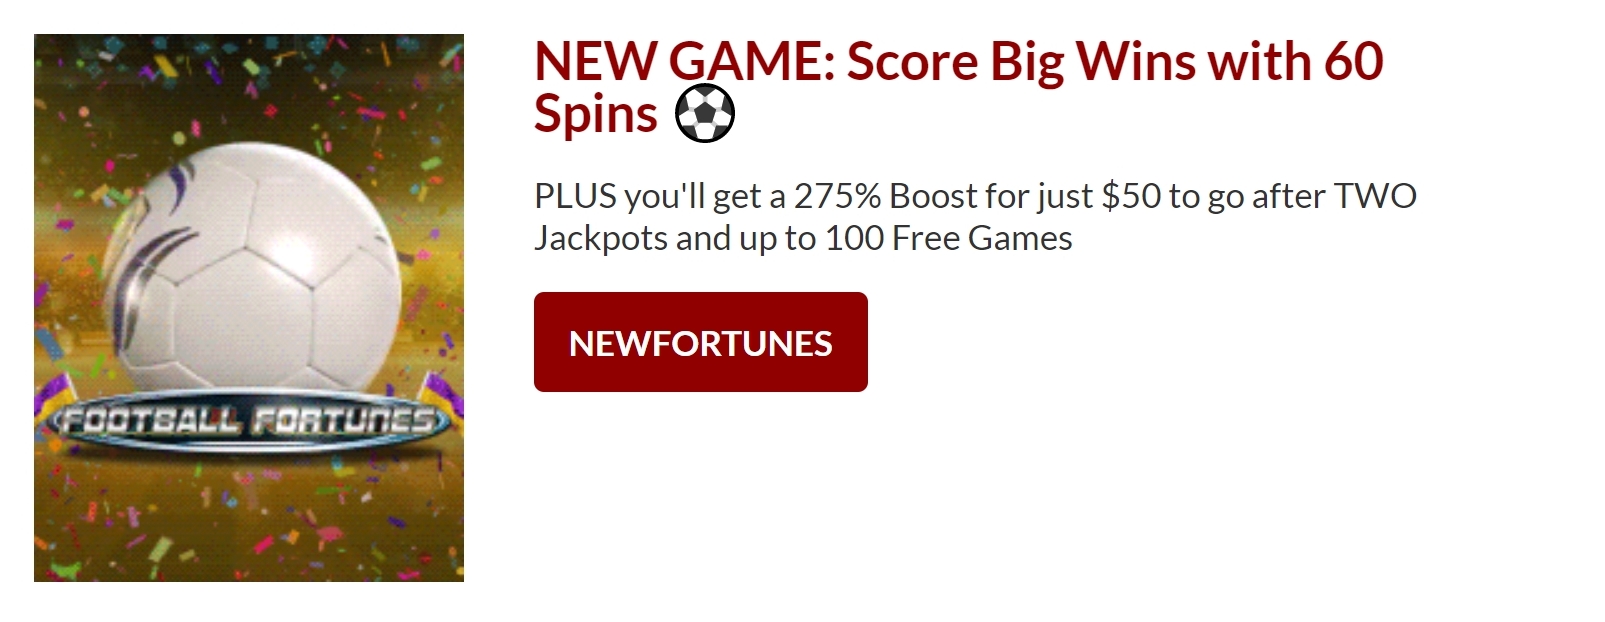 no deposit bonus codes planet 7 casino